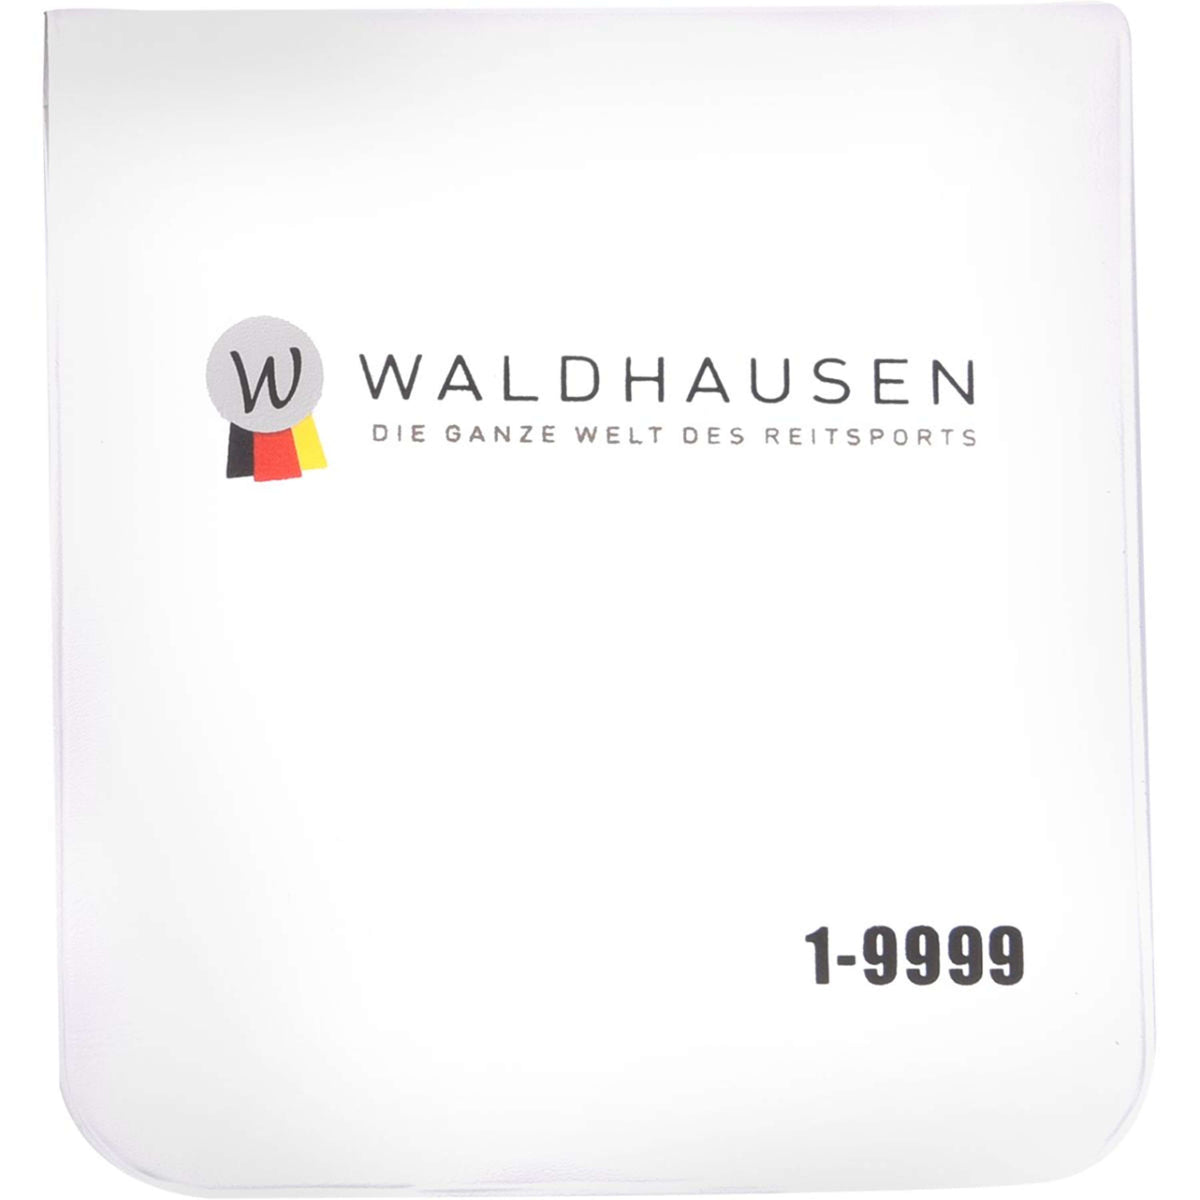 Waldhausen Startnummern